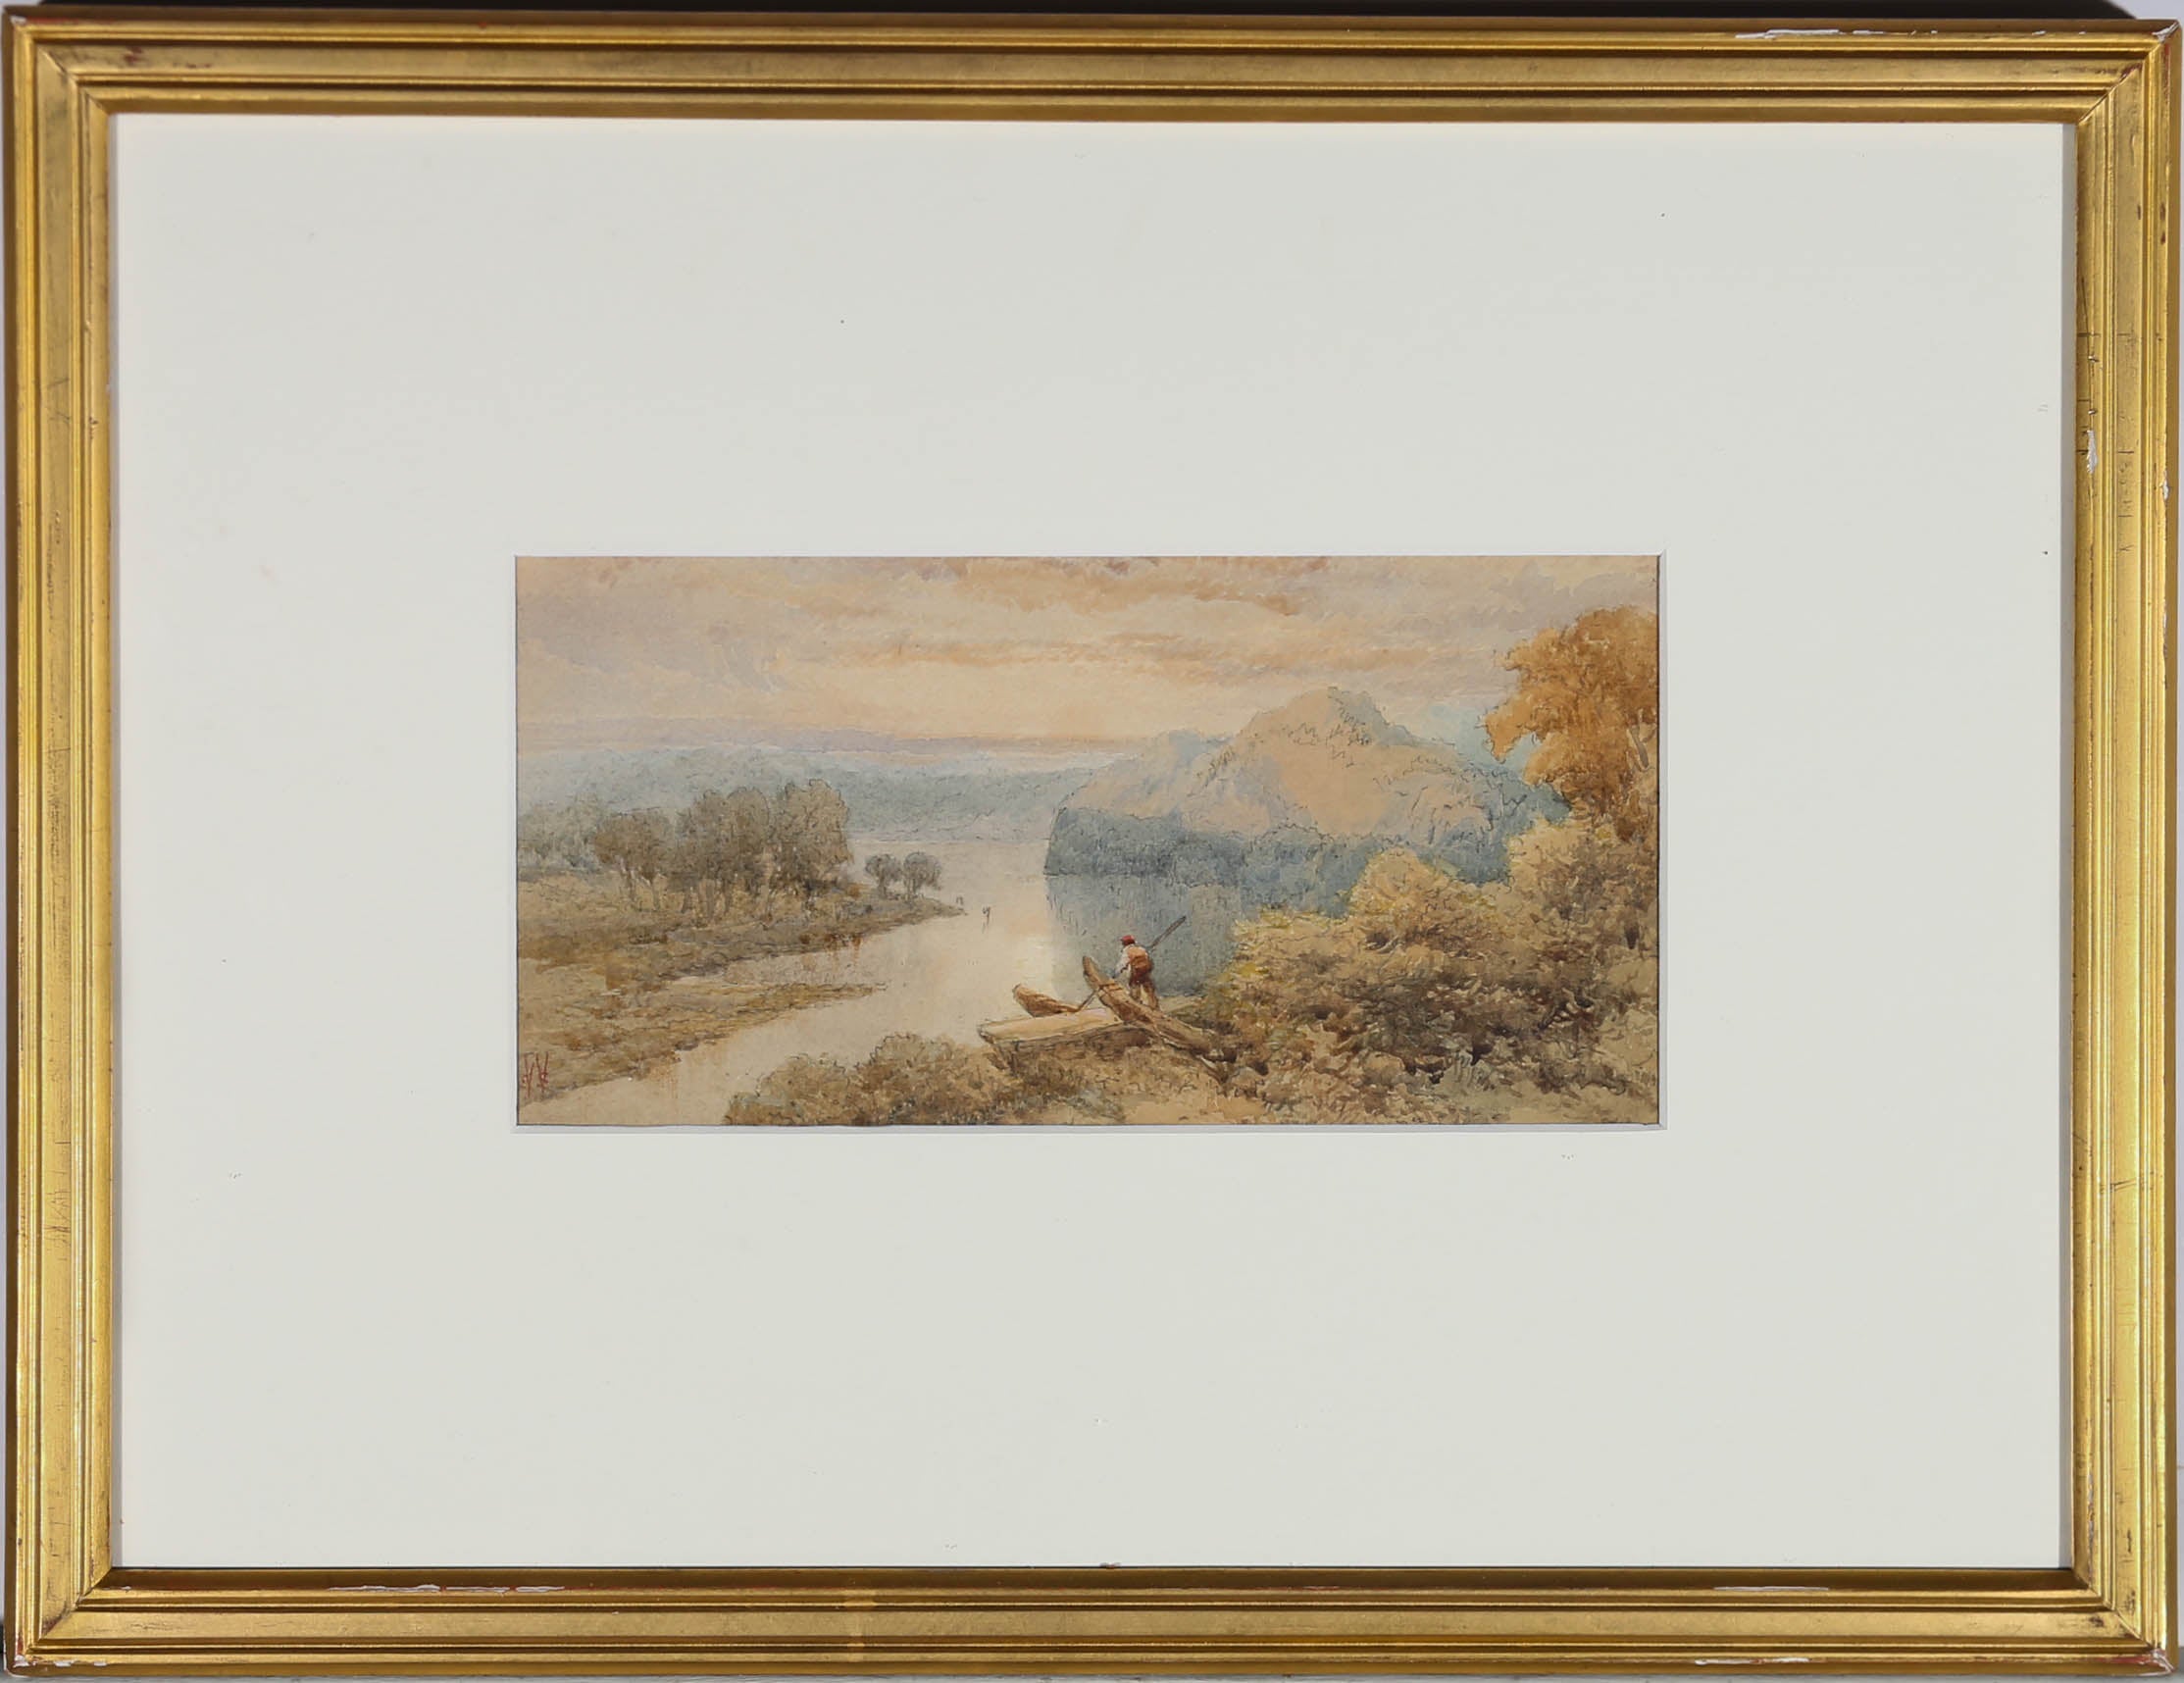 Ein schönes Beispiel für ein Aquarell aus der Mitte des 19. Jahrhunderts, das eine weite Flusslandschaft in der Morgendämmerung zeigt. Ein Mann steht in seinem Boot im Vordergrund und sticht in das Sonnenlicht. Die Künstlerin fängt die sanfte